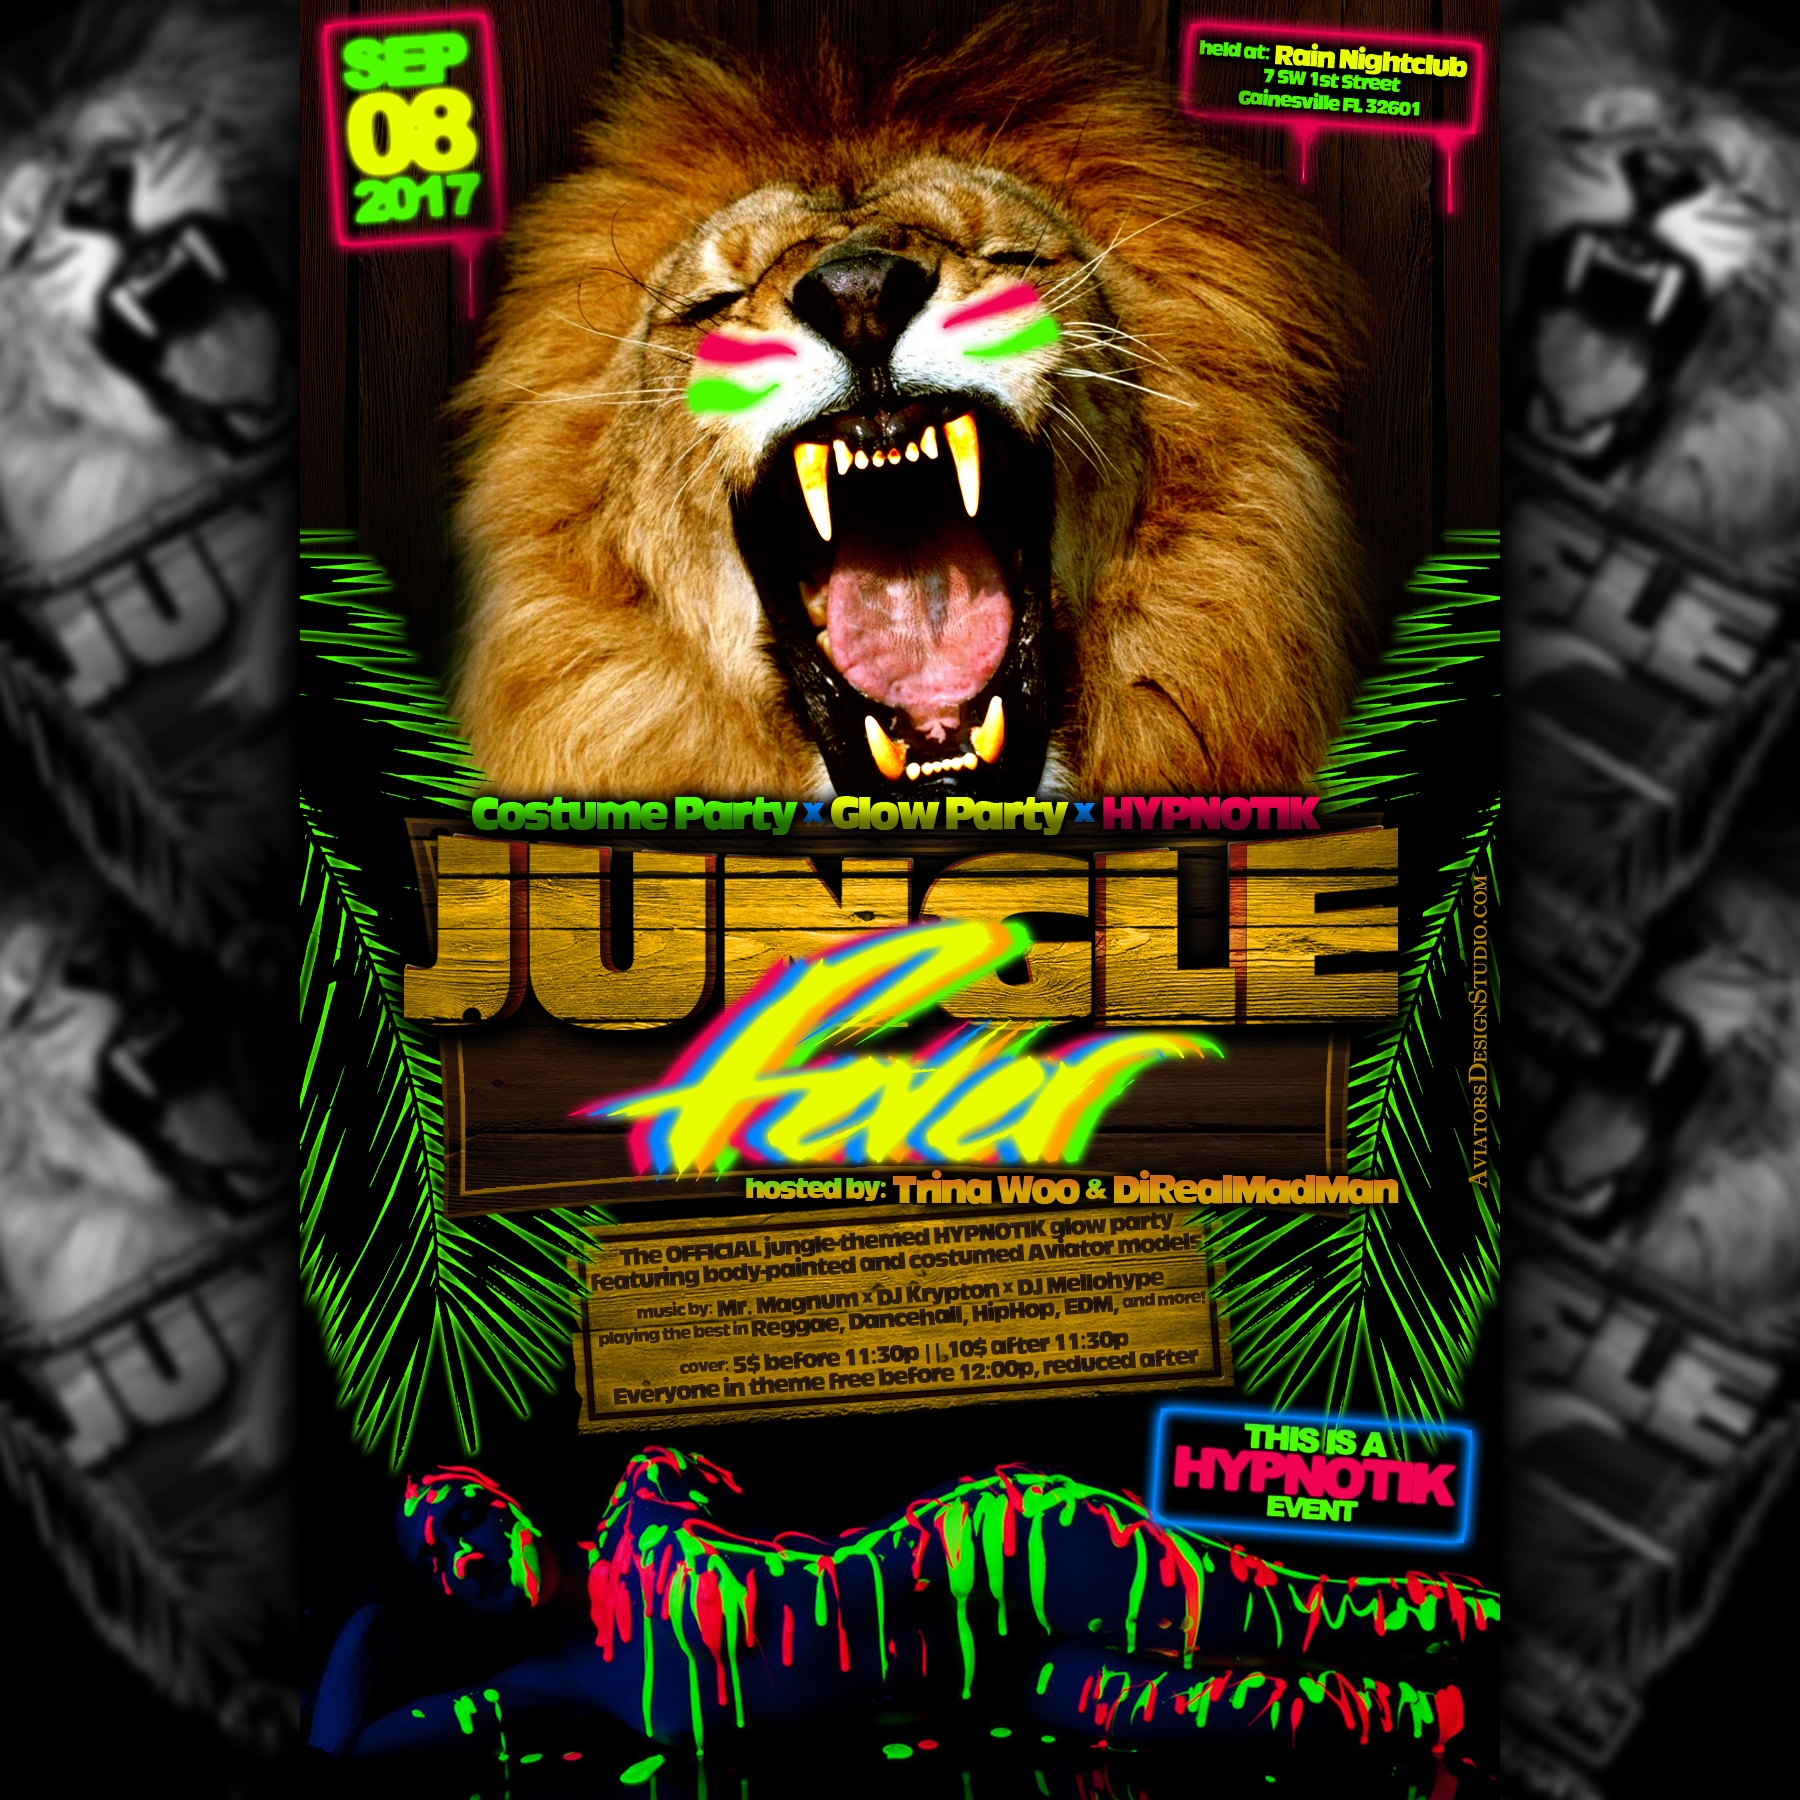 Jungle Fever - A HypnotiK Event